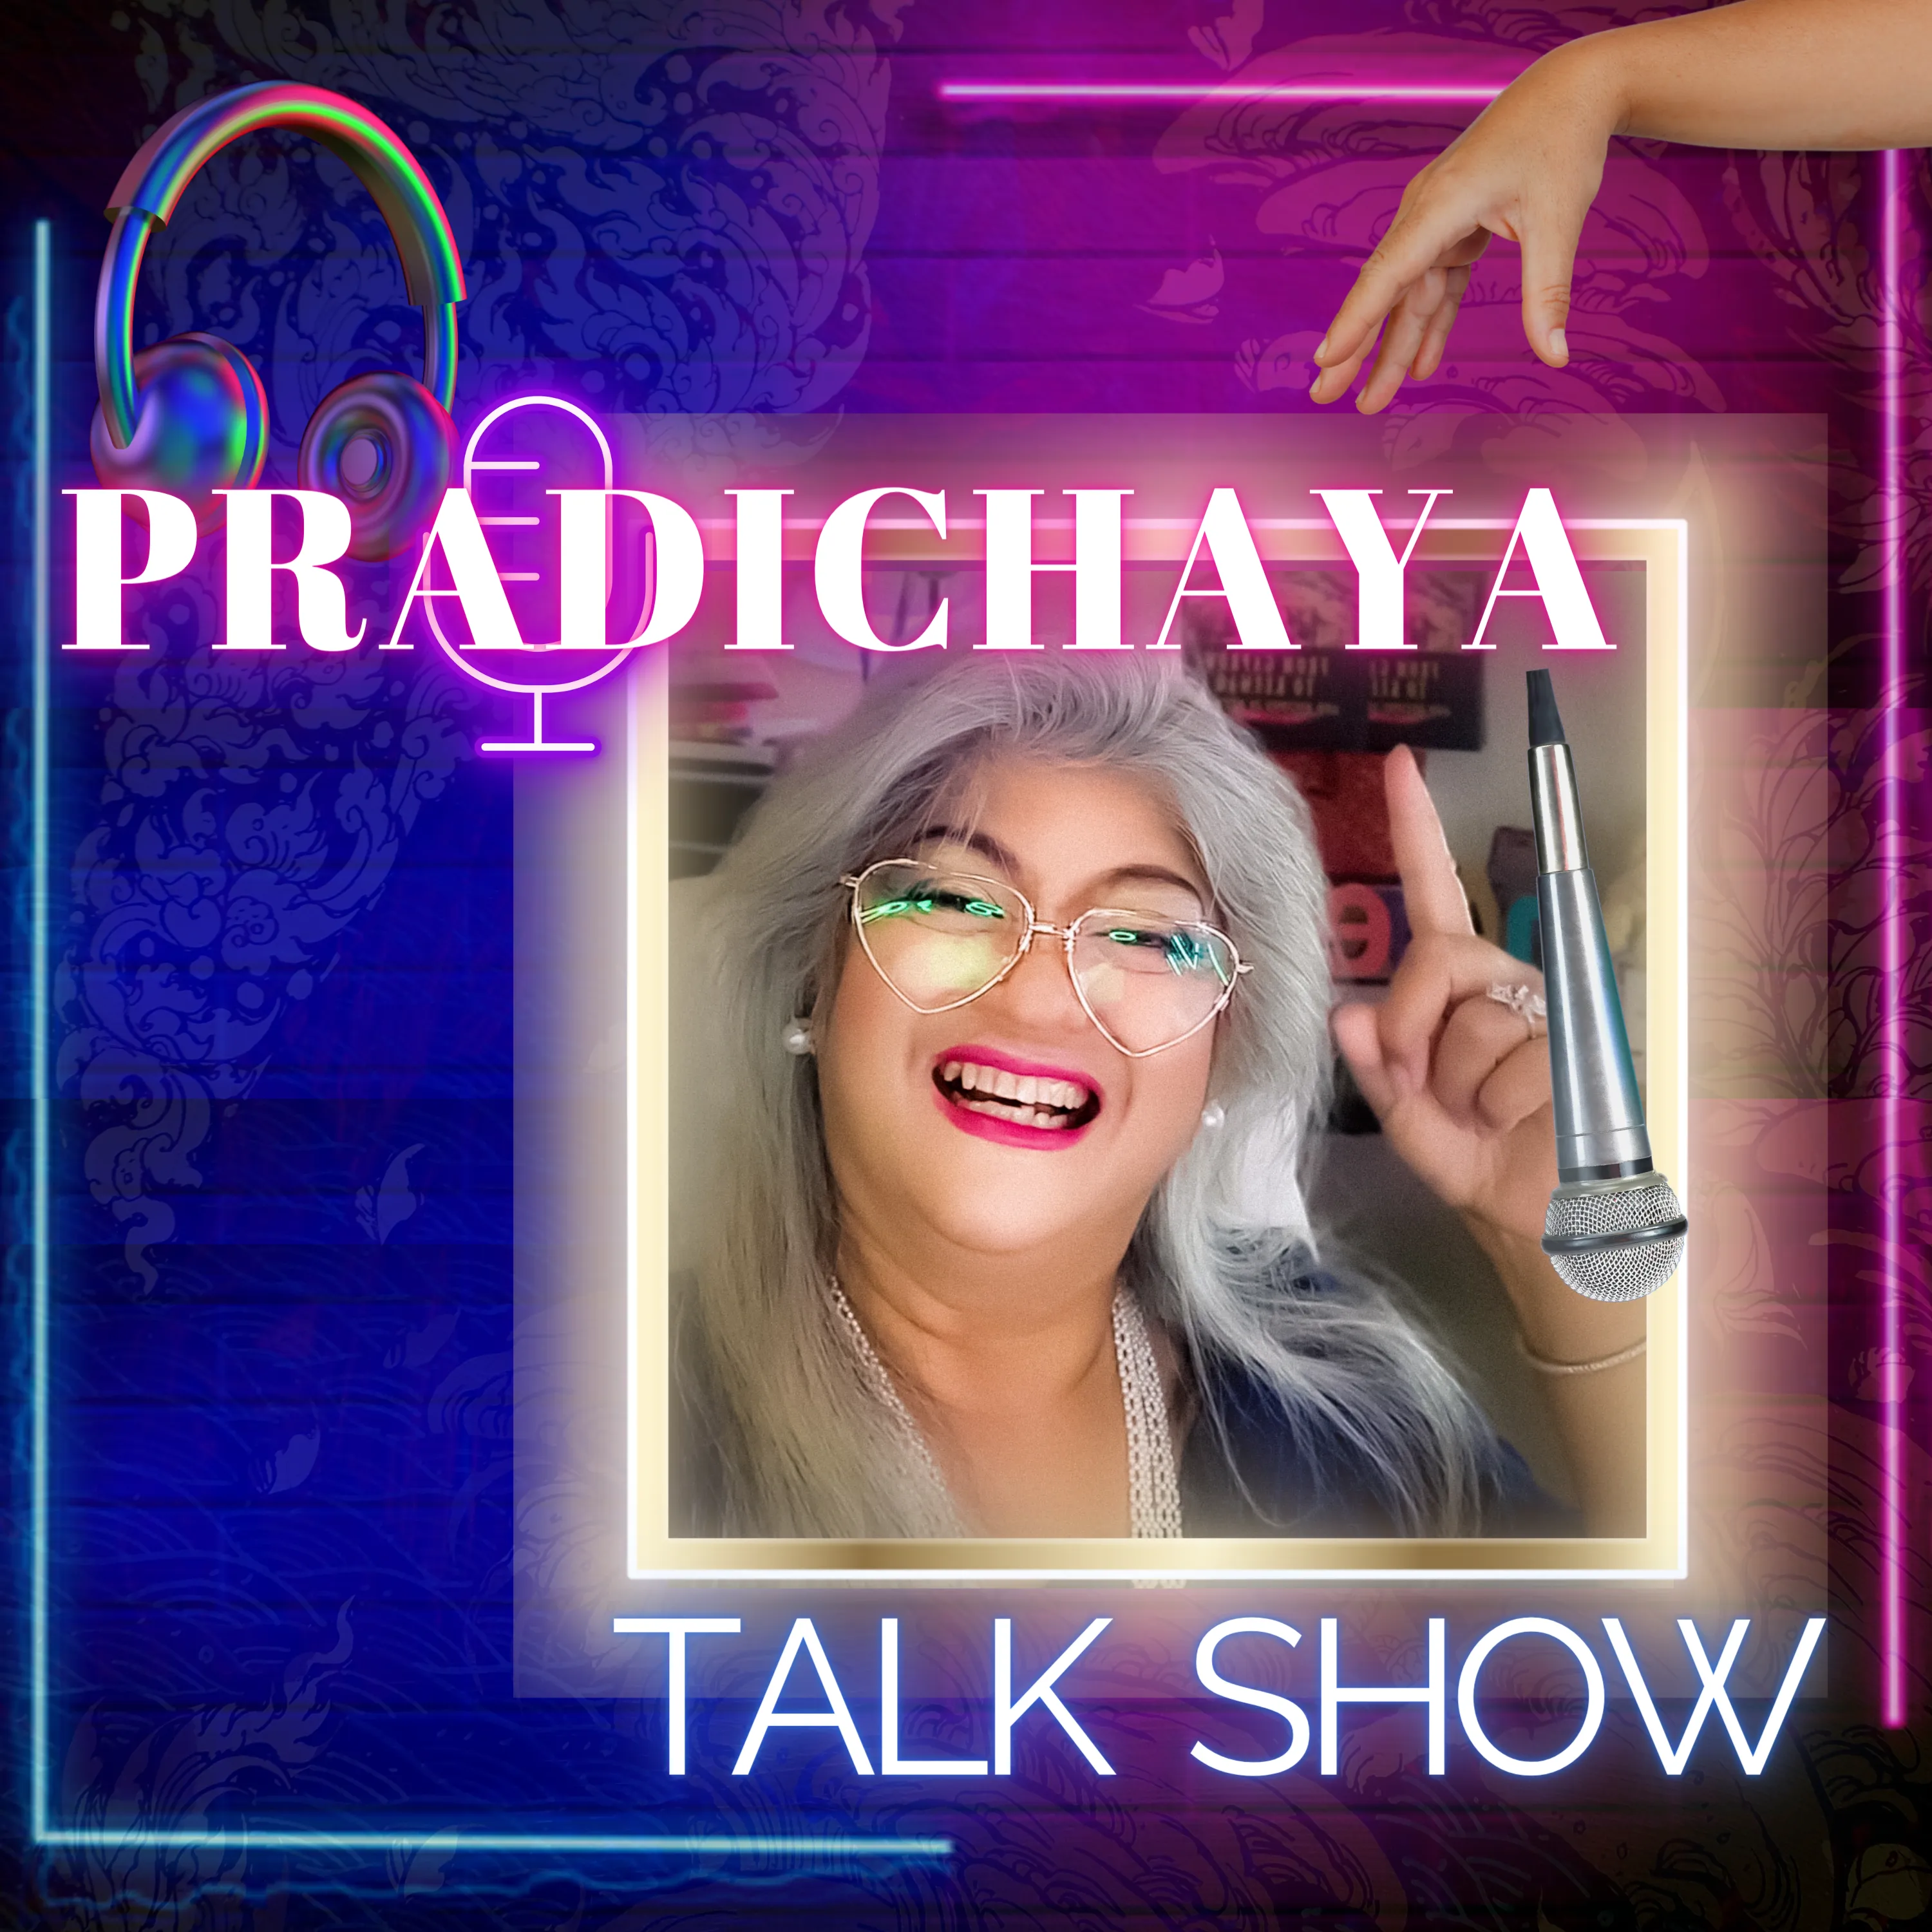 Pradichaya Talk Show